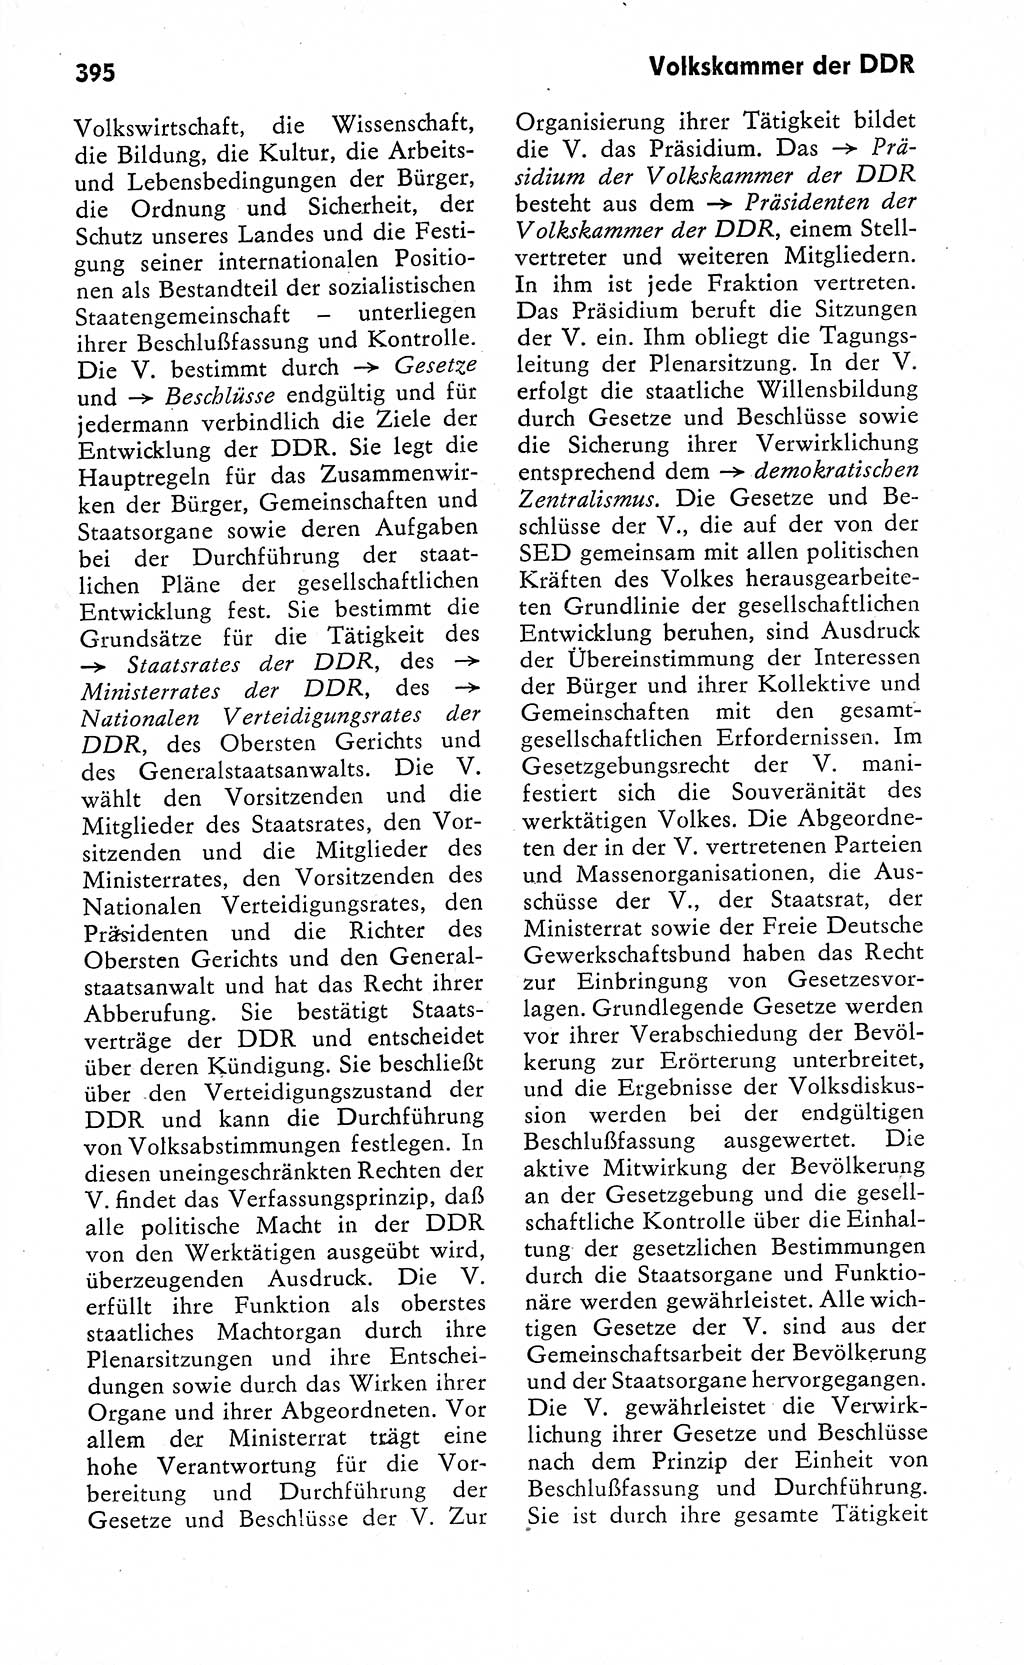 Wörterbuch zum sozialistischen Staat [Deutsche Demokratische Republik (DDR)] 1974, Seite 395 (Wb. soz. St. DDR 1974, S. 395)